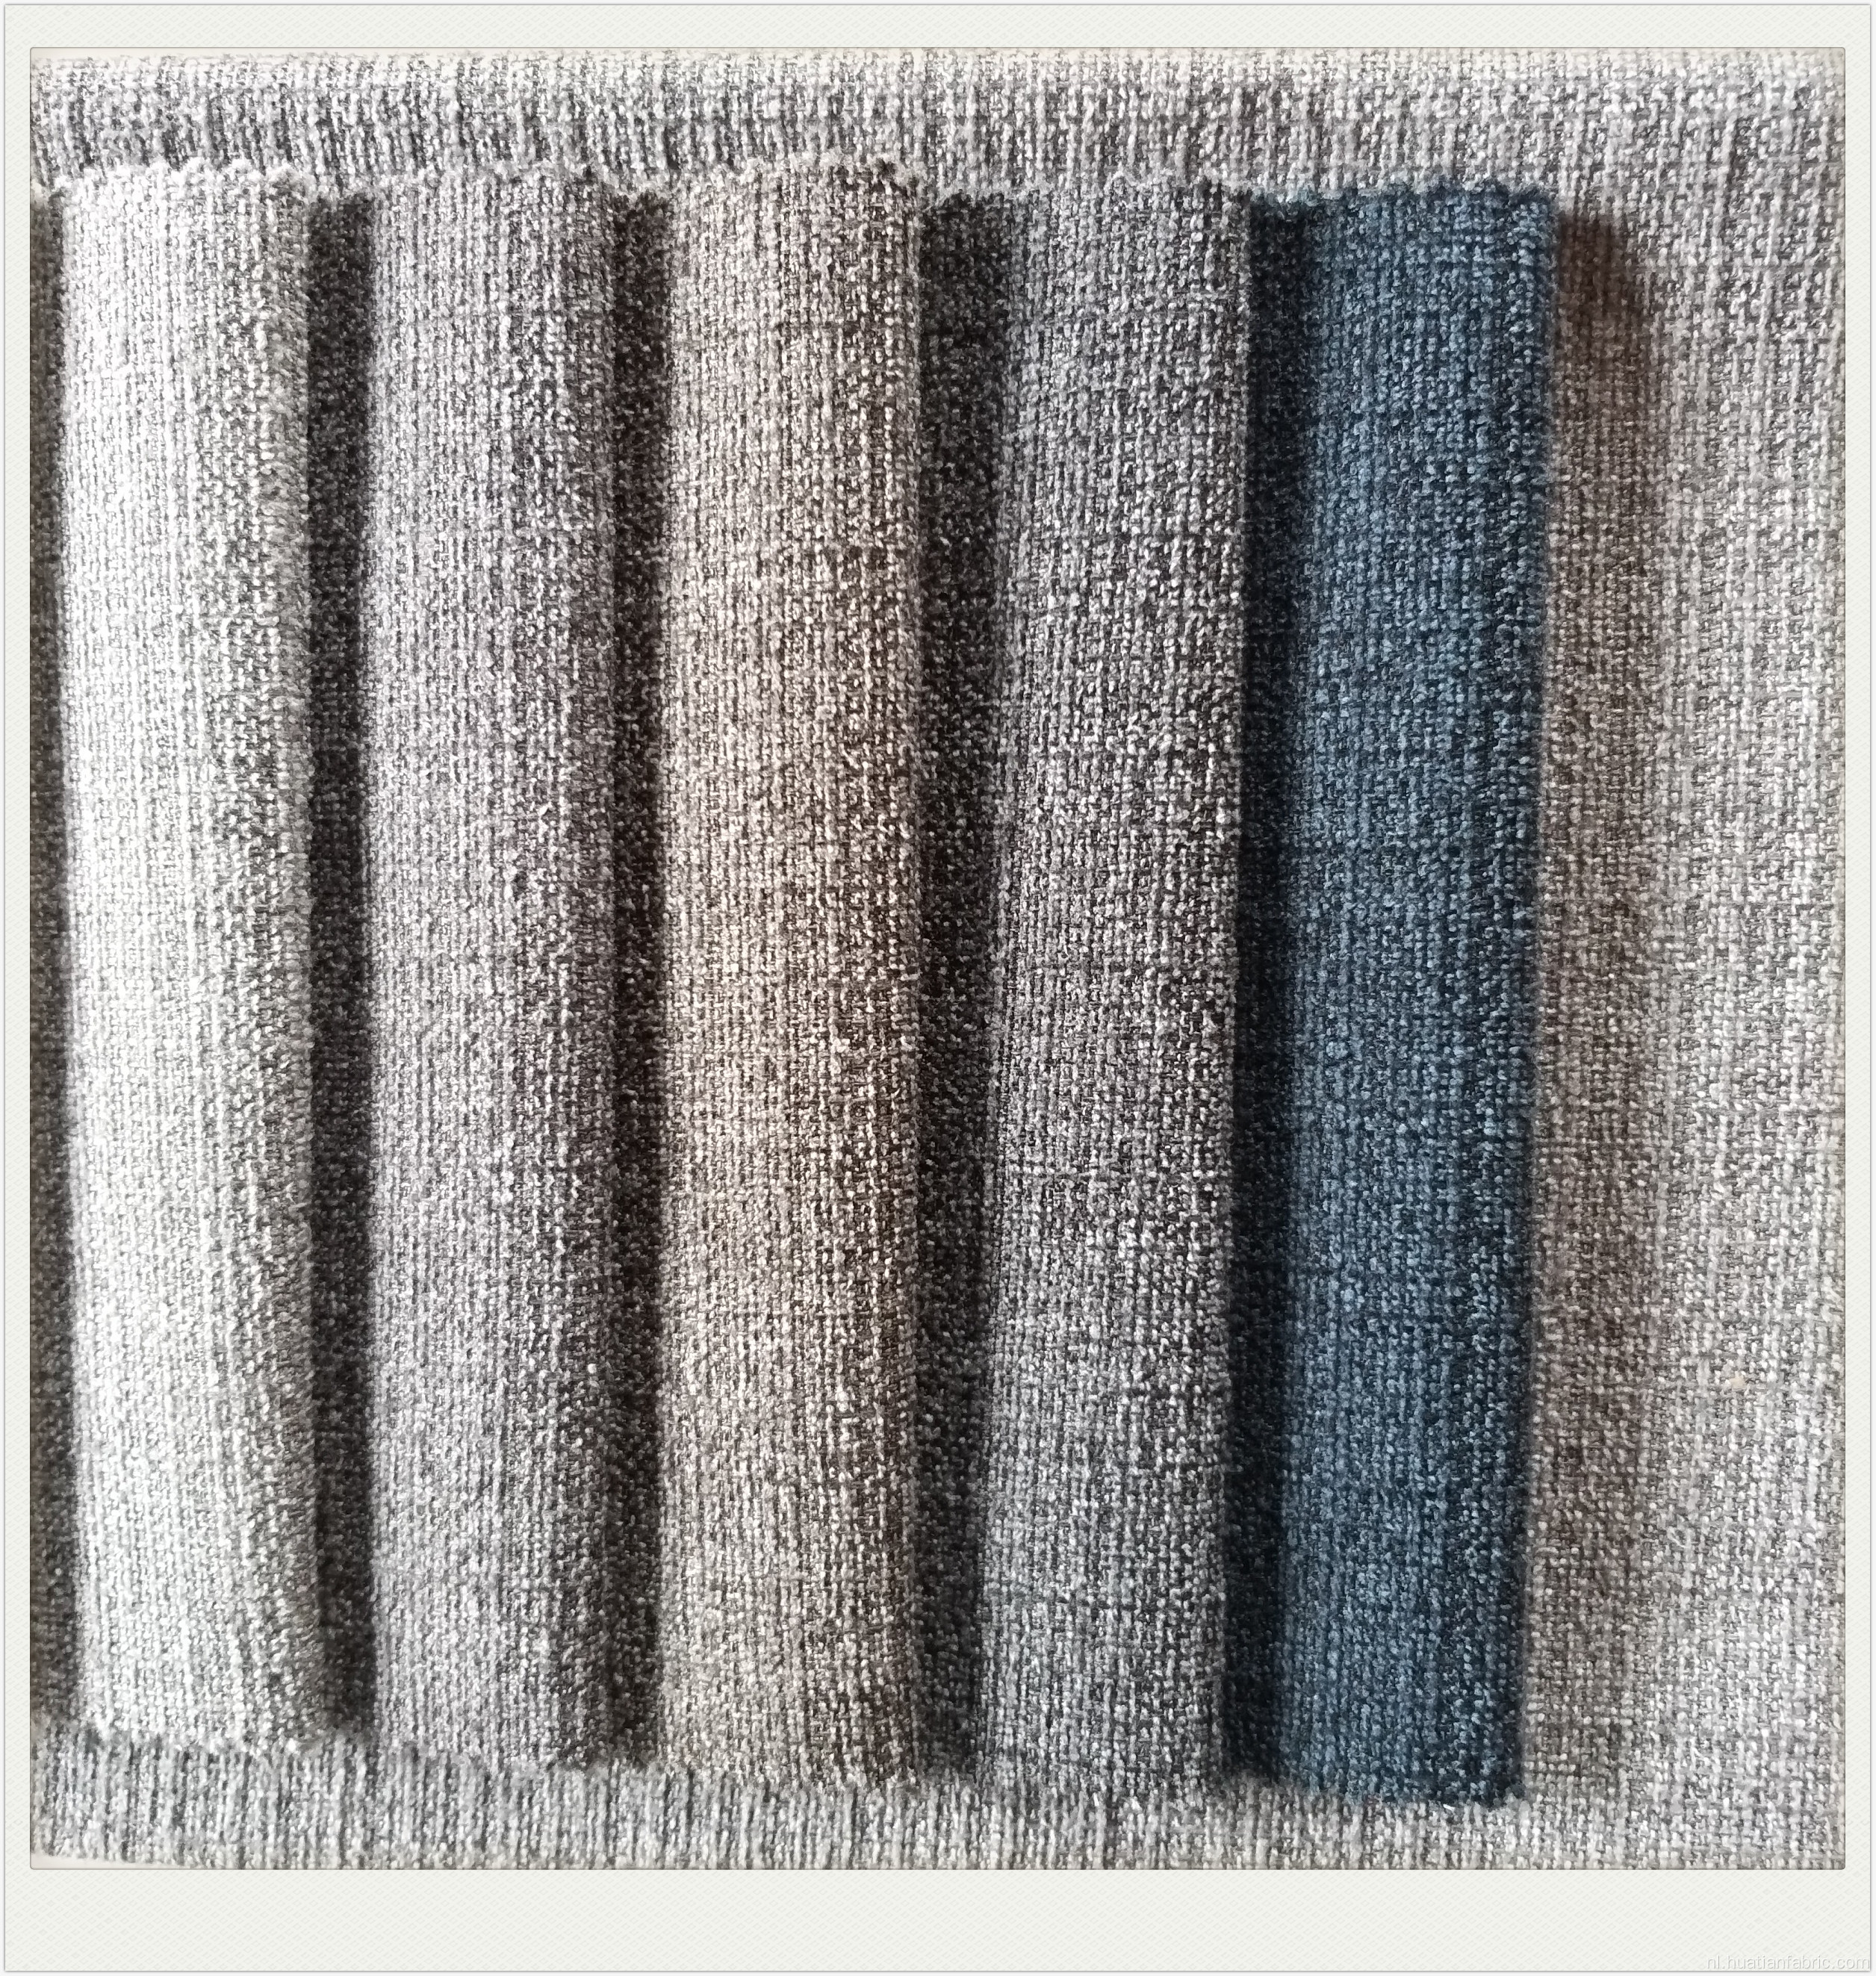 Romeinse fluwelen sofa-stof voor gebruik thuis textielbekleding